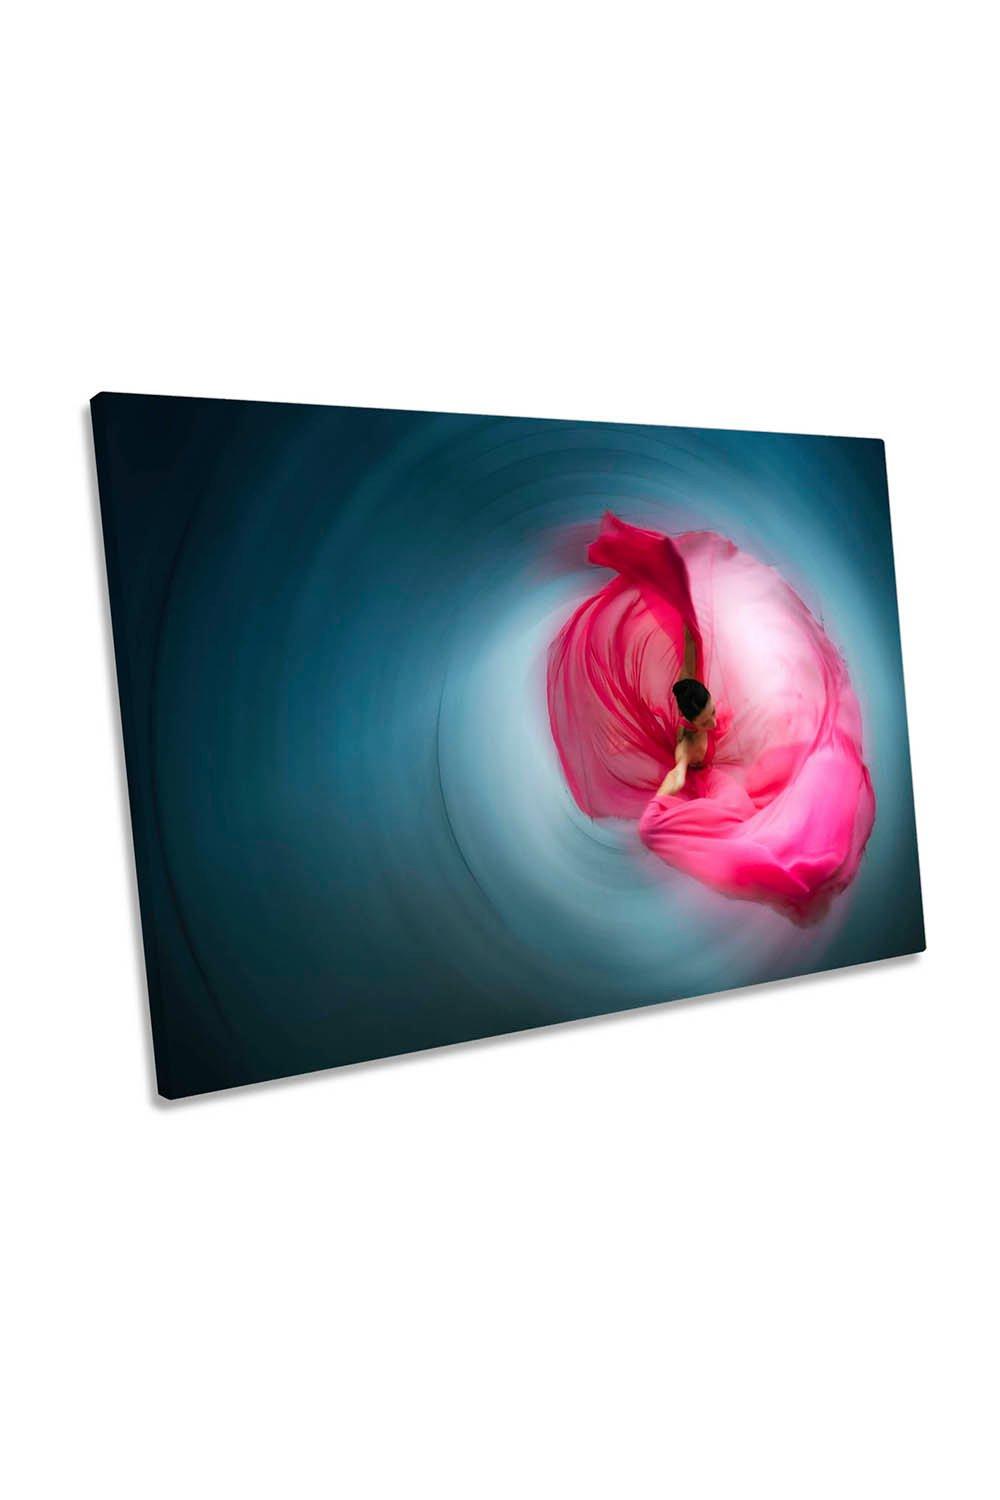 Pink Ballerina Dancer Dress Swirl Rose Canvas Wall Art Picture Print